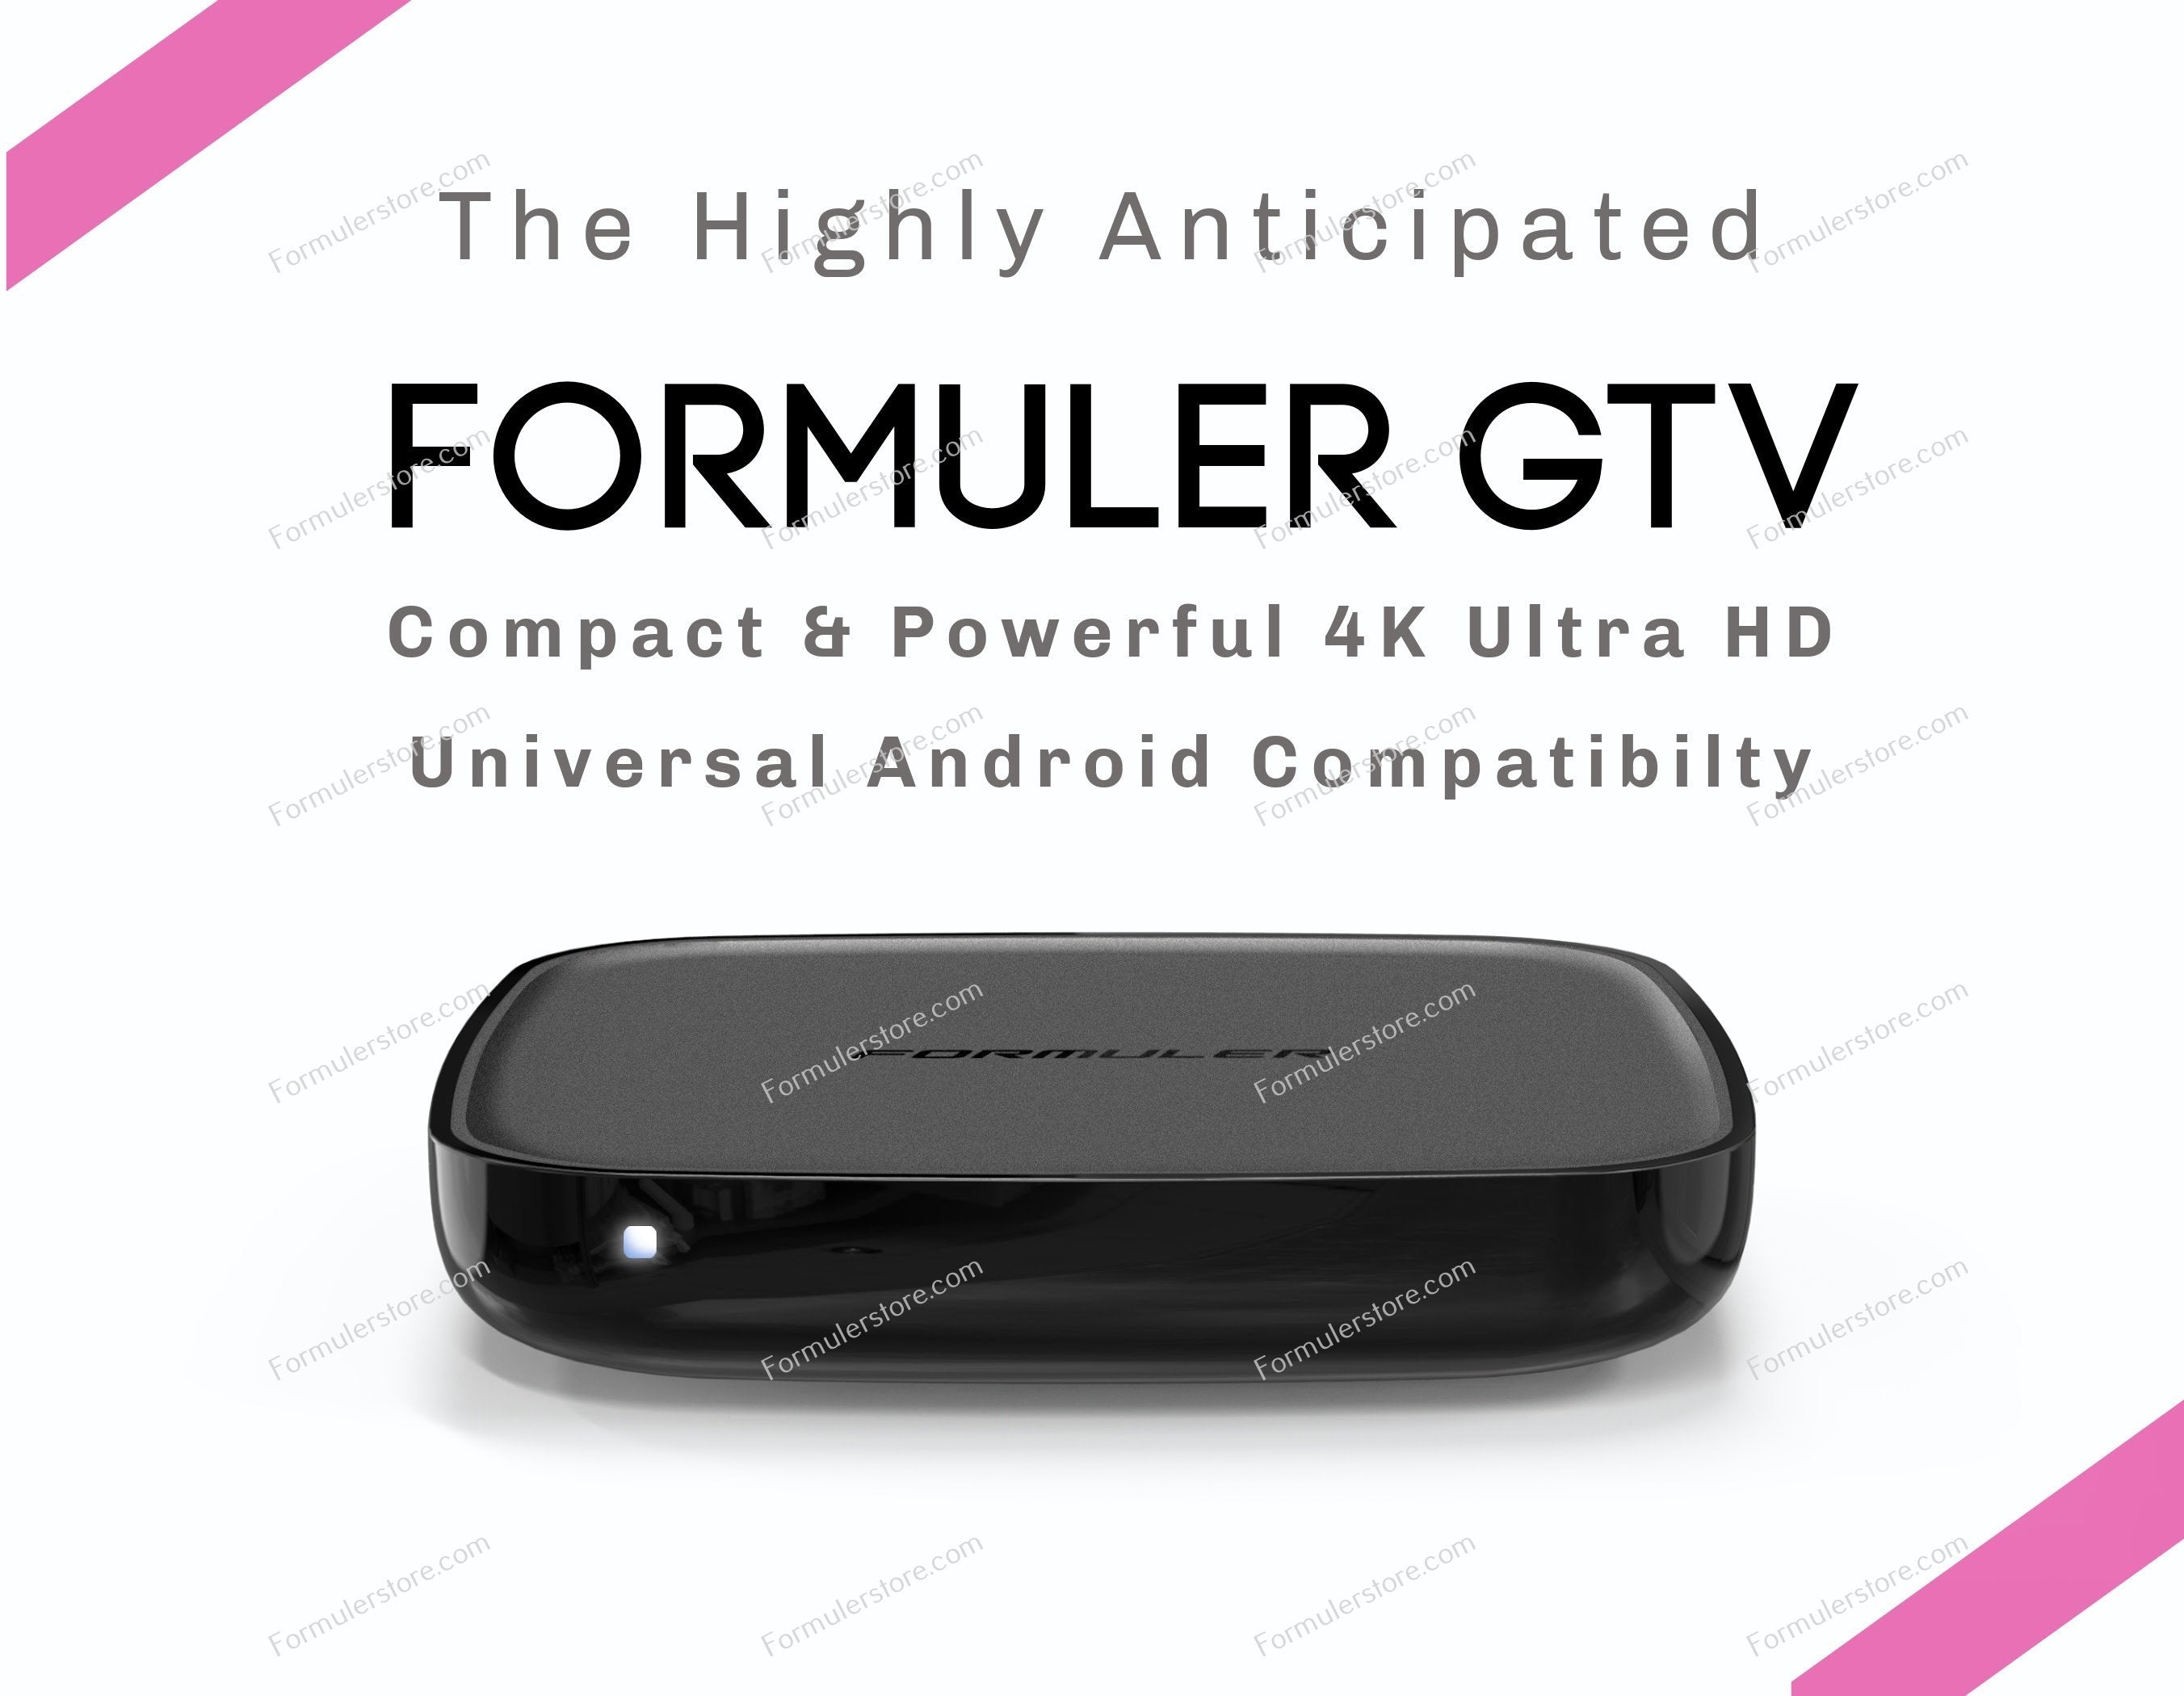 Formuler GTV IPTV Android 4k